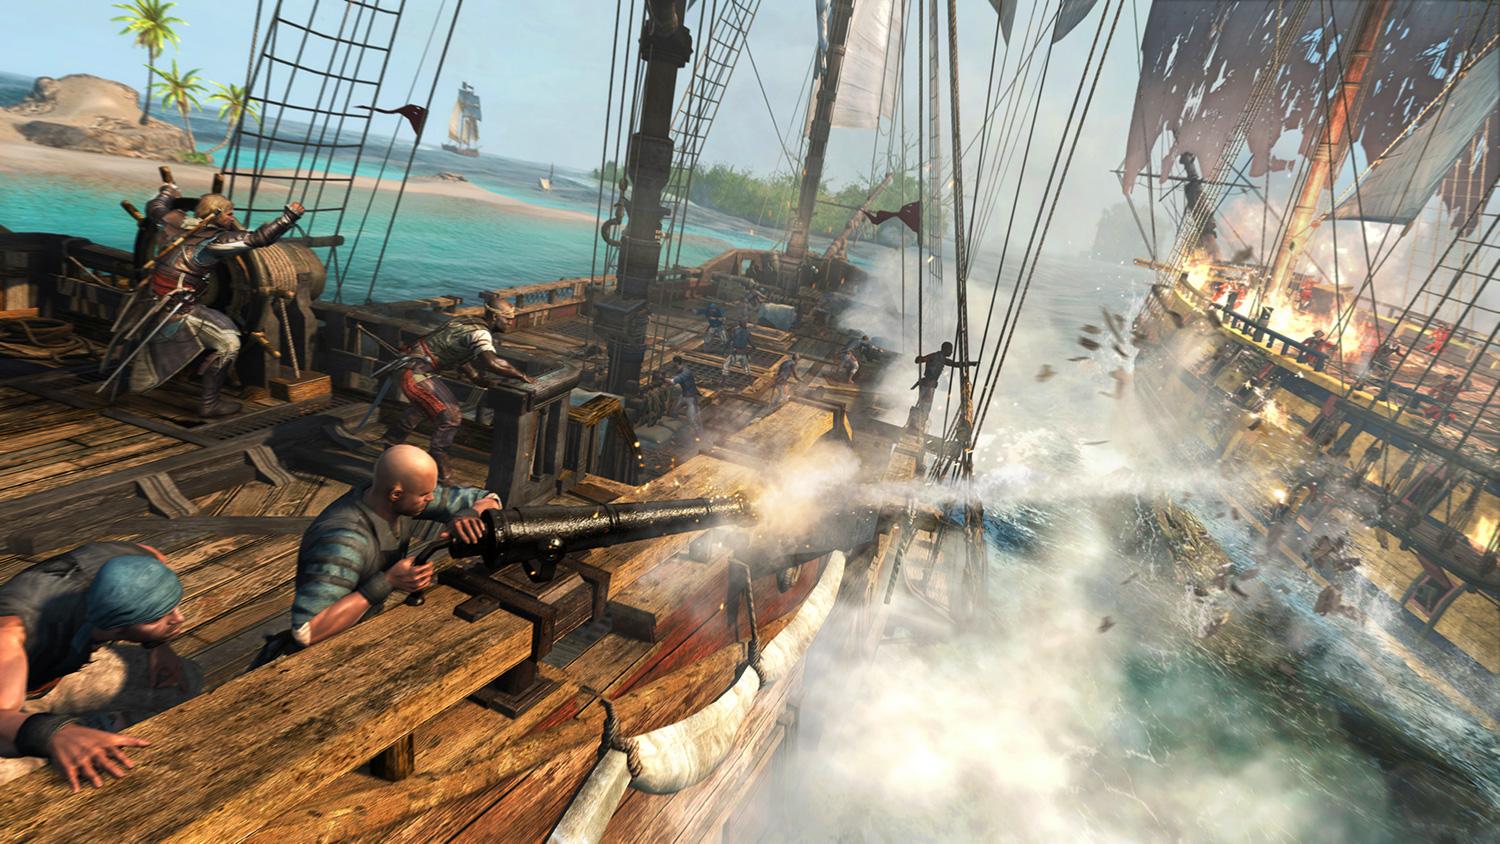 سن کرید - Assassin’s Creed 4: Black Flag دزدان دریایی کارائیب